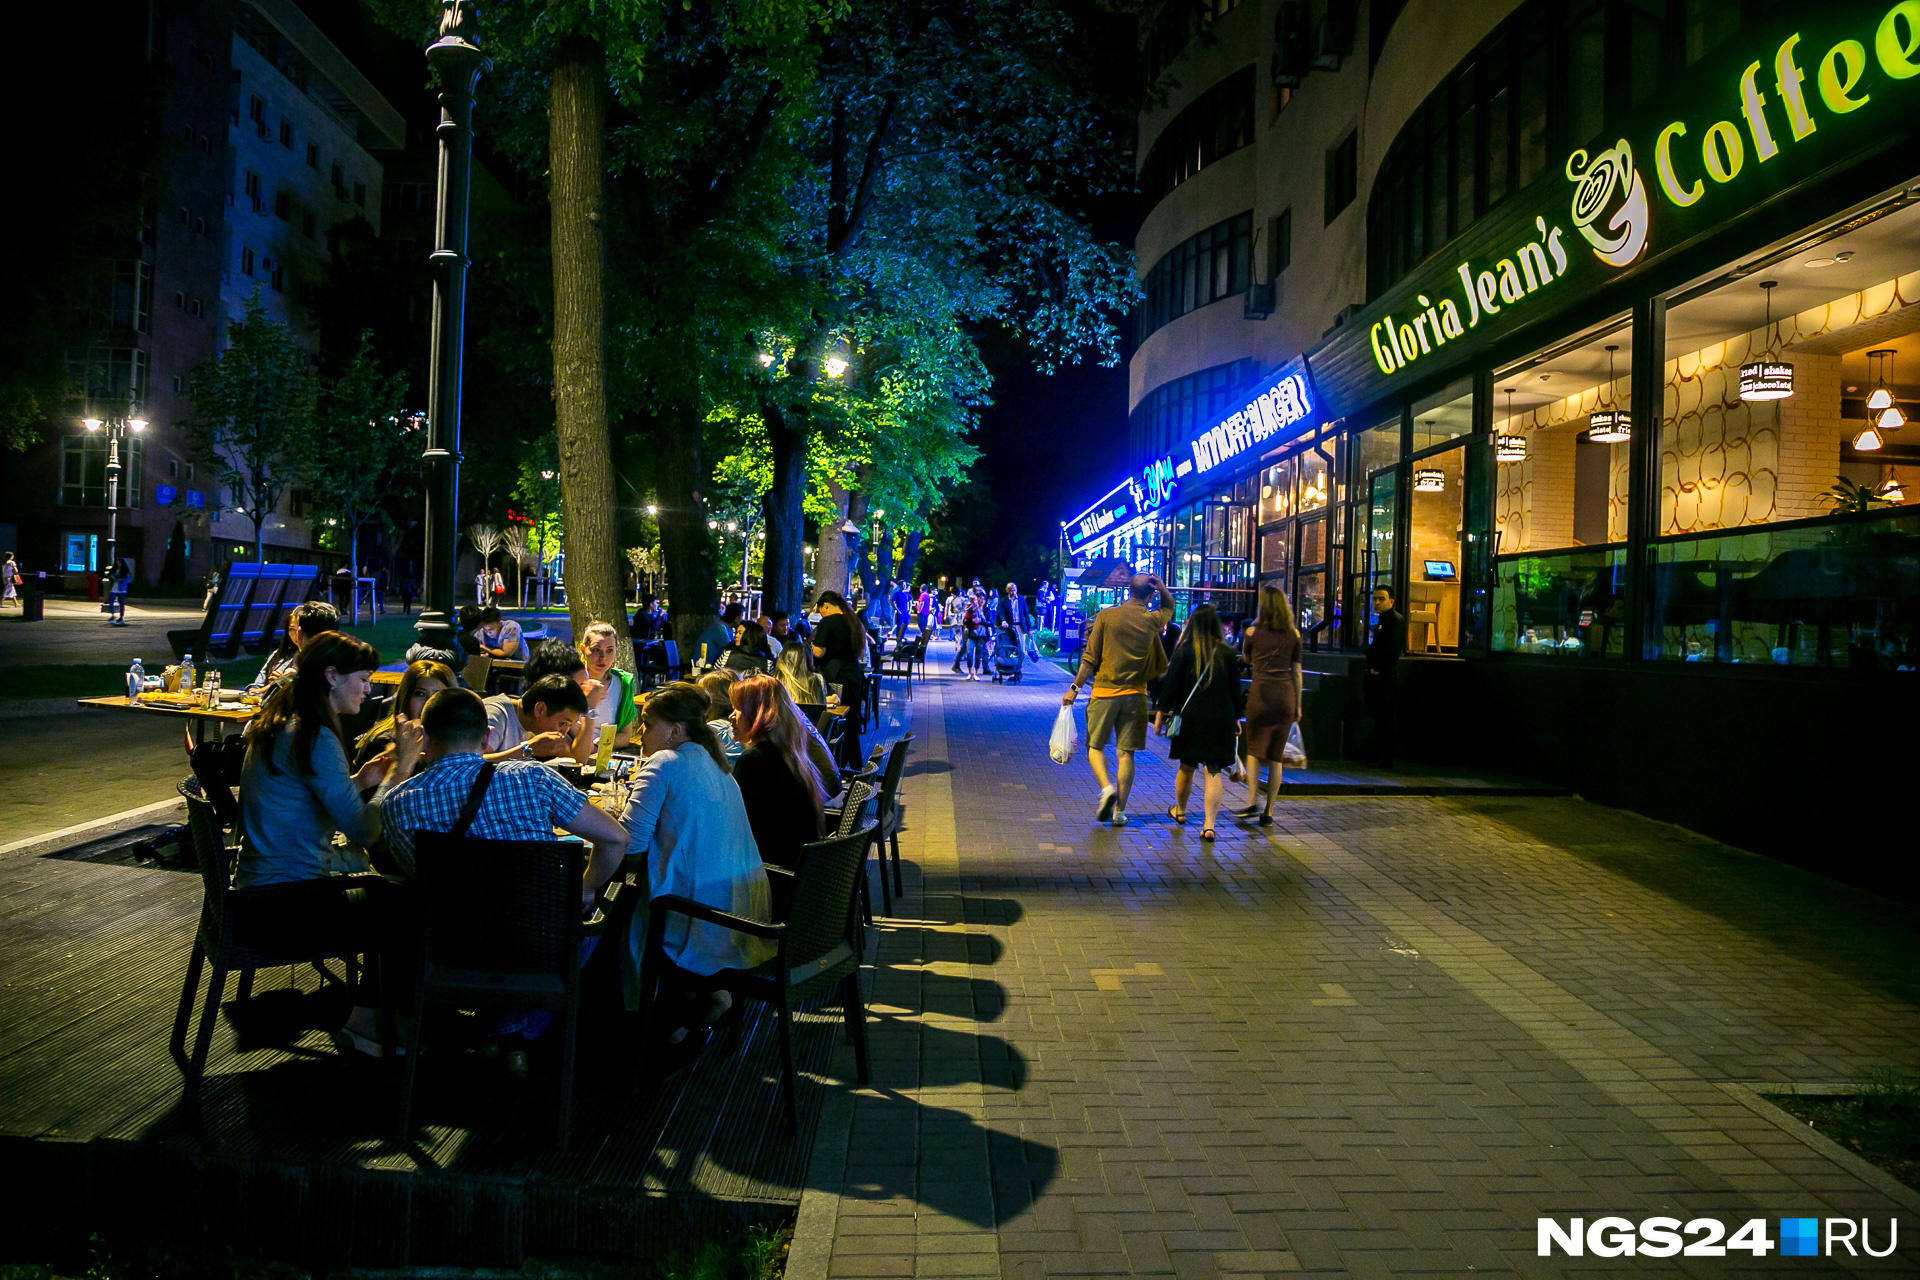 1,5 км пешеходной зоны улицы вечерами превращается в большой Арбат — на прогулку выходят туристы, вечером возле кафе появляются столики. Днем они популярностью не пользуются из-за жары.